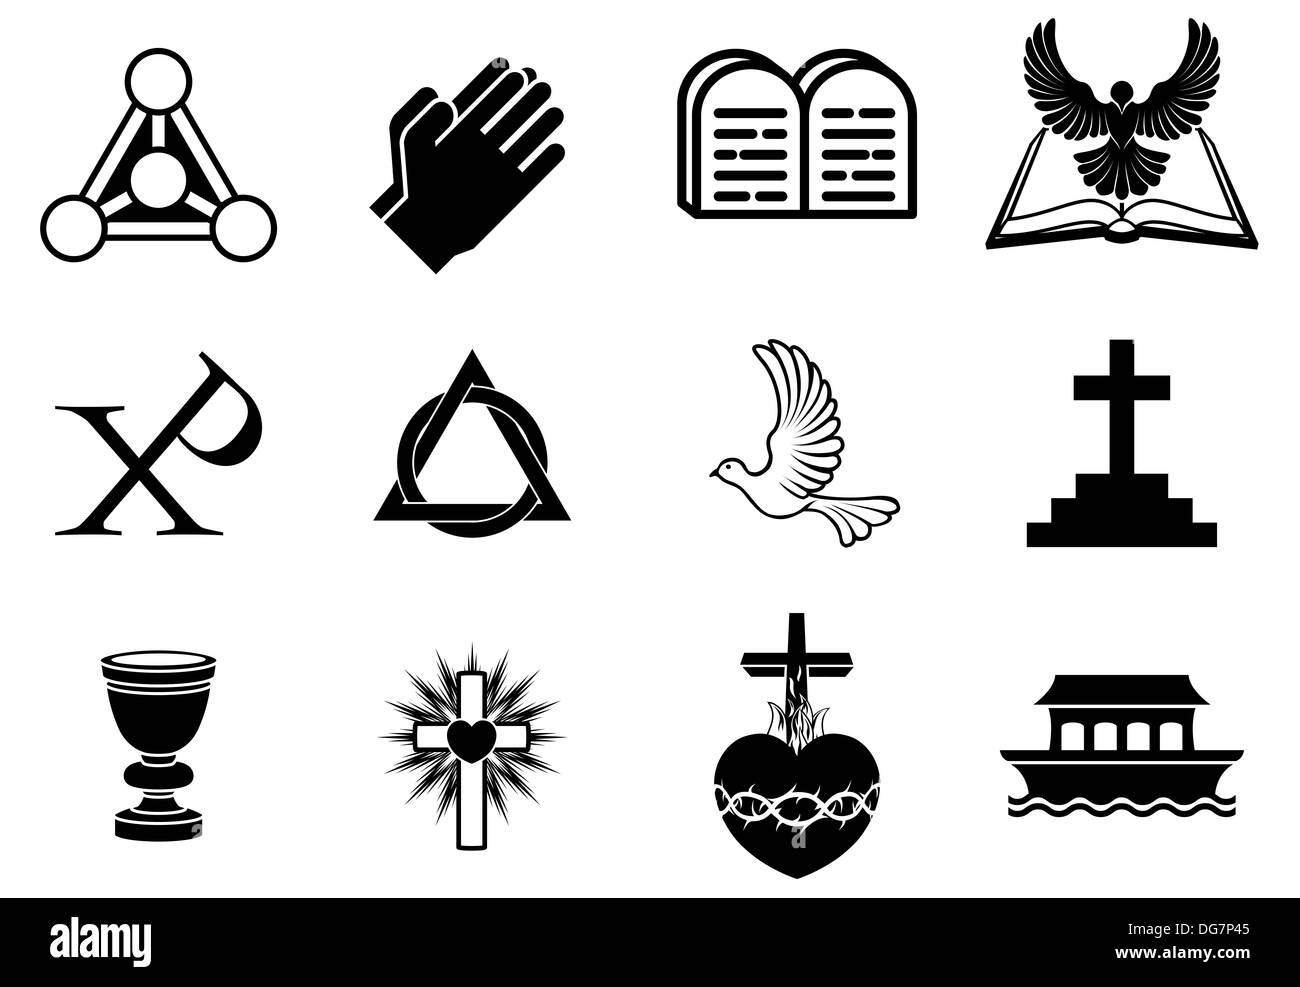 Le christianisme, y compris des symboles et dove, Chi Ro, mains qui prient, bible, Trinity christogram, cross, communion goblet, arche Banque D'Images